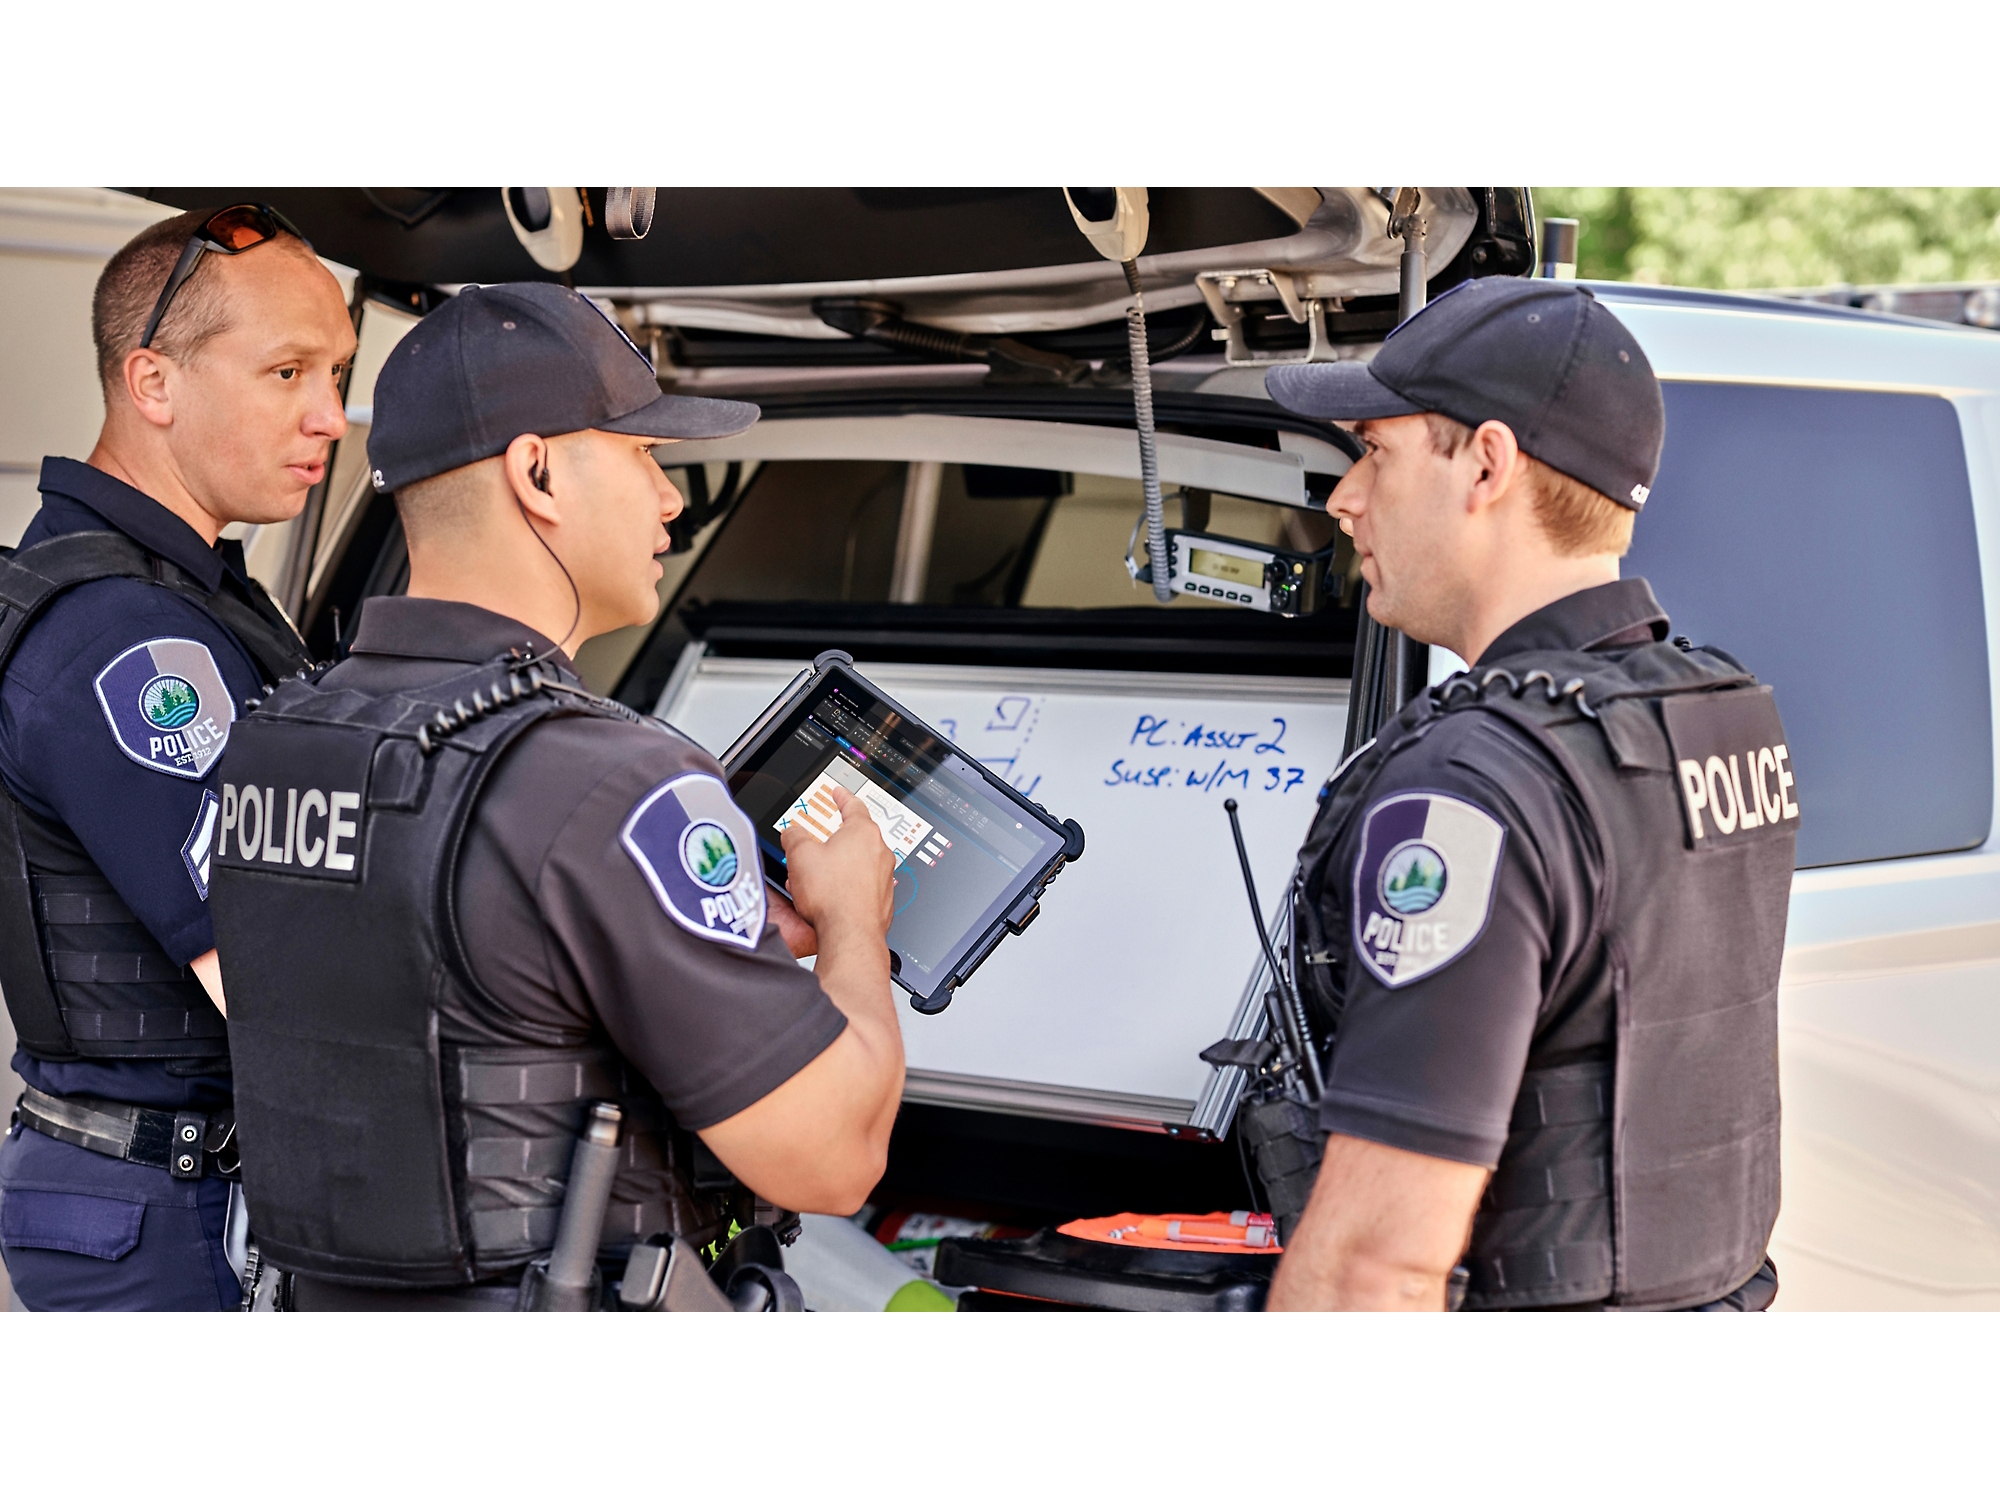 Trzech funkcjonariuszy policji przegląda informacje ma tablecie cyfrowym poza radiowozem z otwartym bagażnikiem